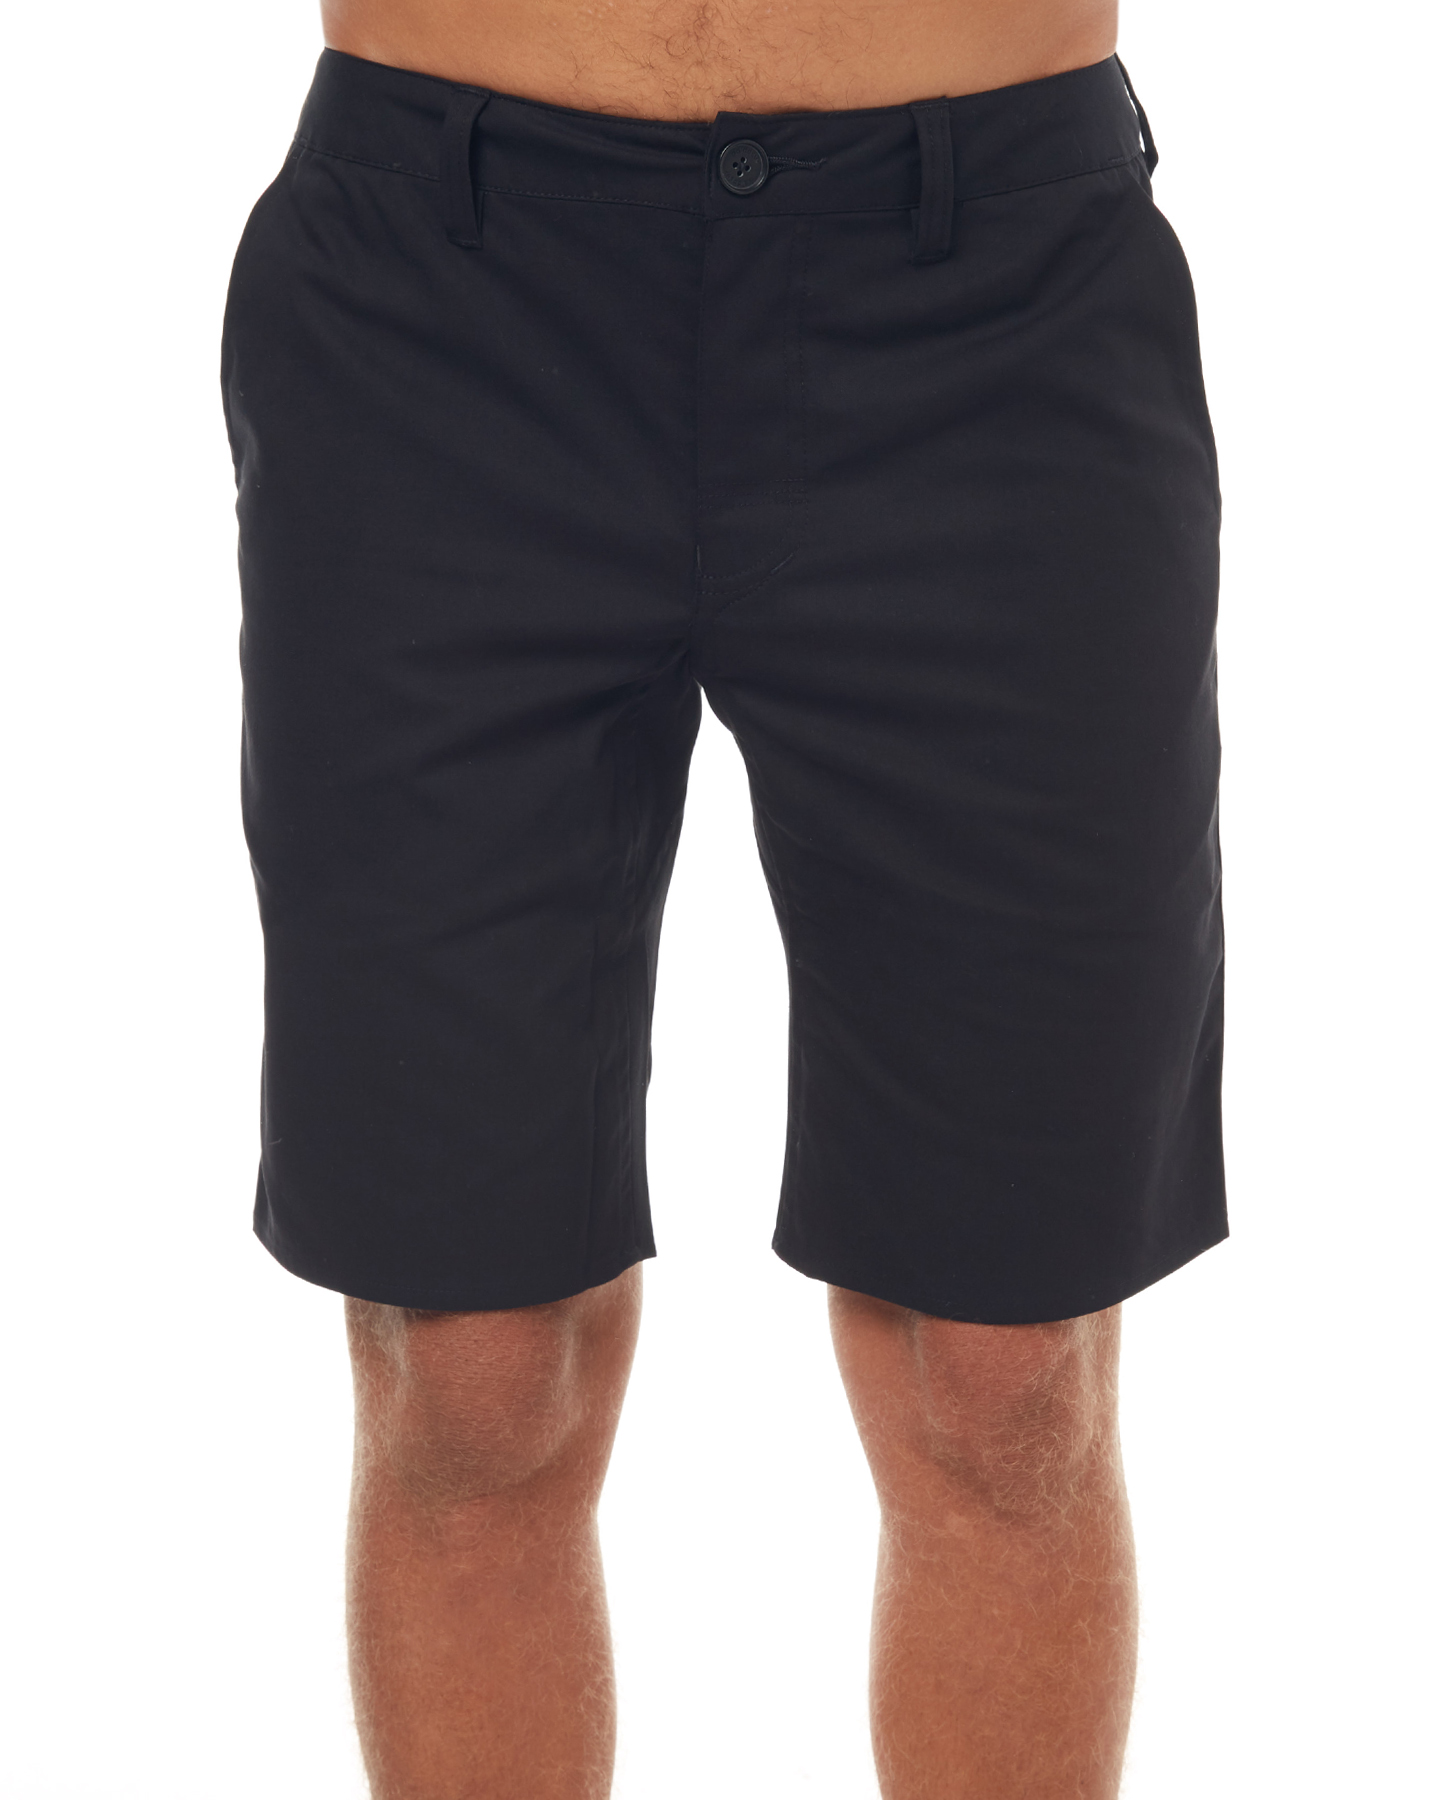 mens chino shorts black mens clothing adidas originals shorts - s24642blk ... UGVYRTF